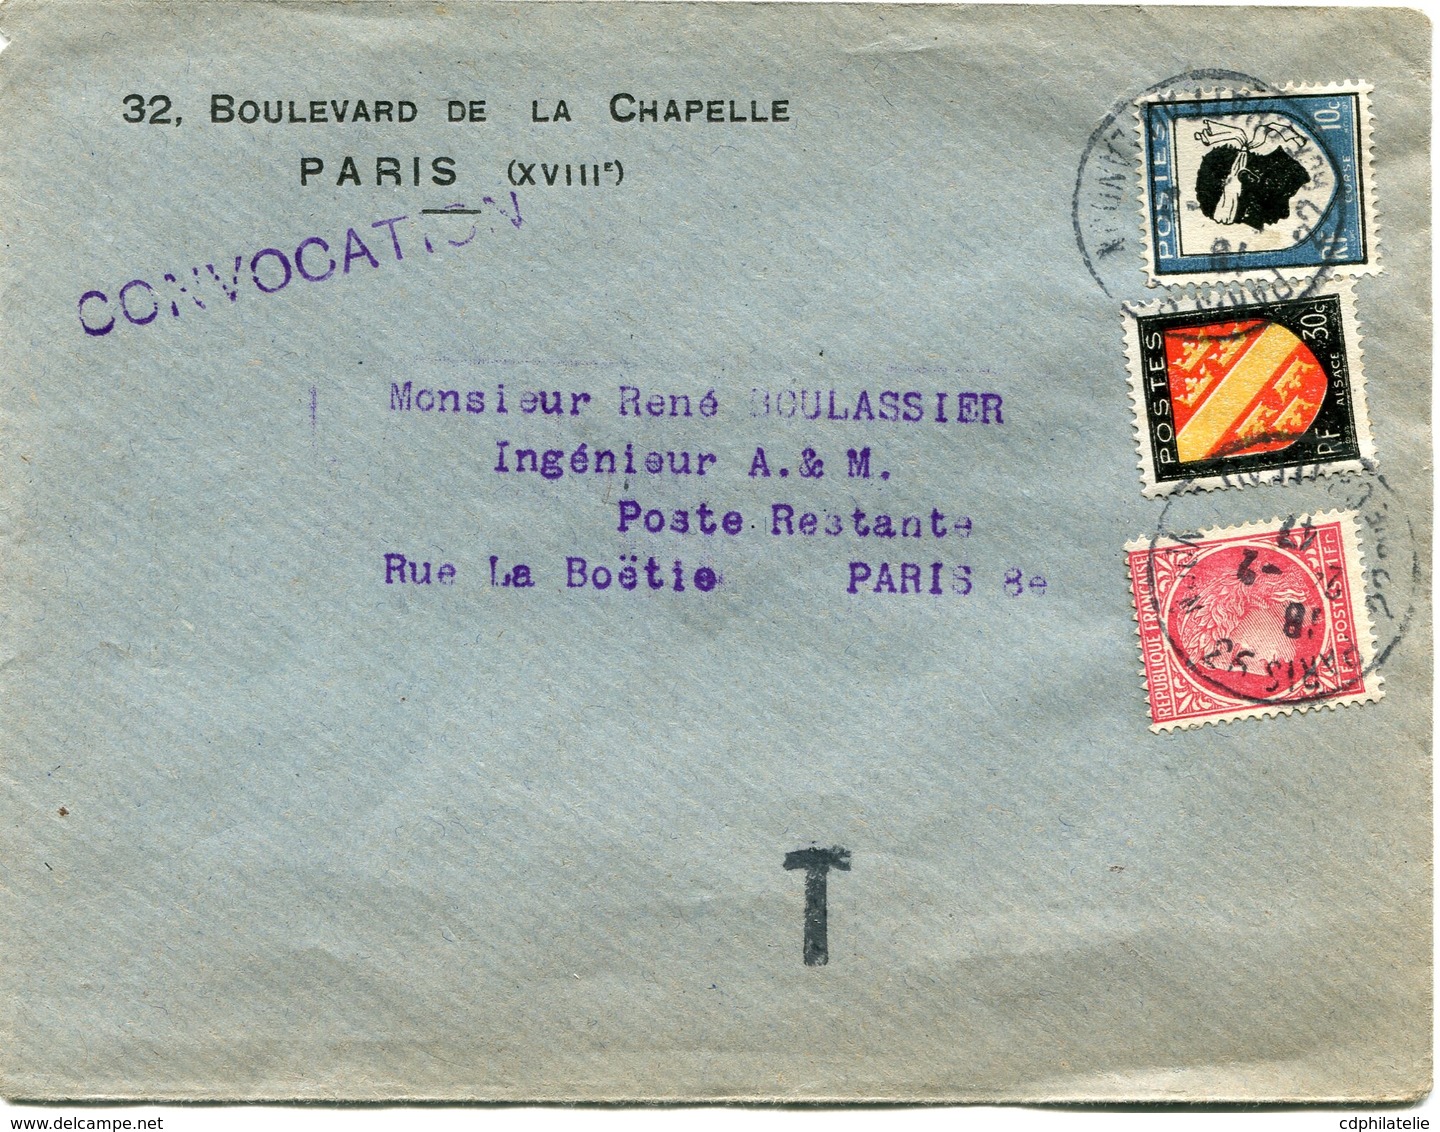 FRANCE LETTRE DEPART PARIS 24-2-47 RUE CHATEAU LANDON TAXEE EN POSTE RESTANTE PARIS 25-2-47 R. LA BOETIE - 1945-47 Ceres De Mazelin